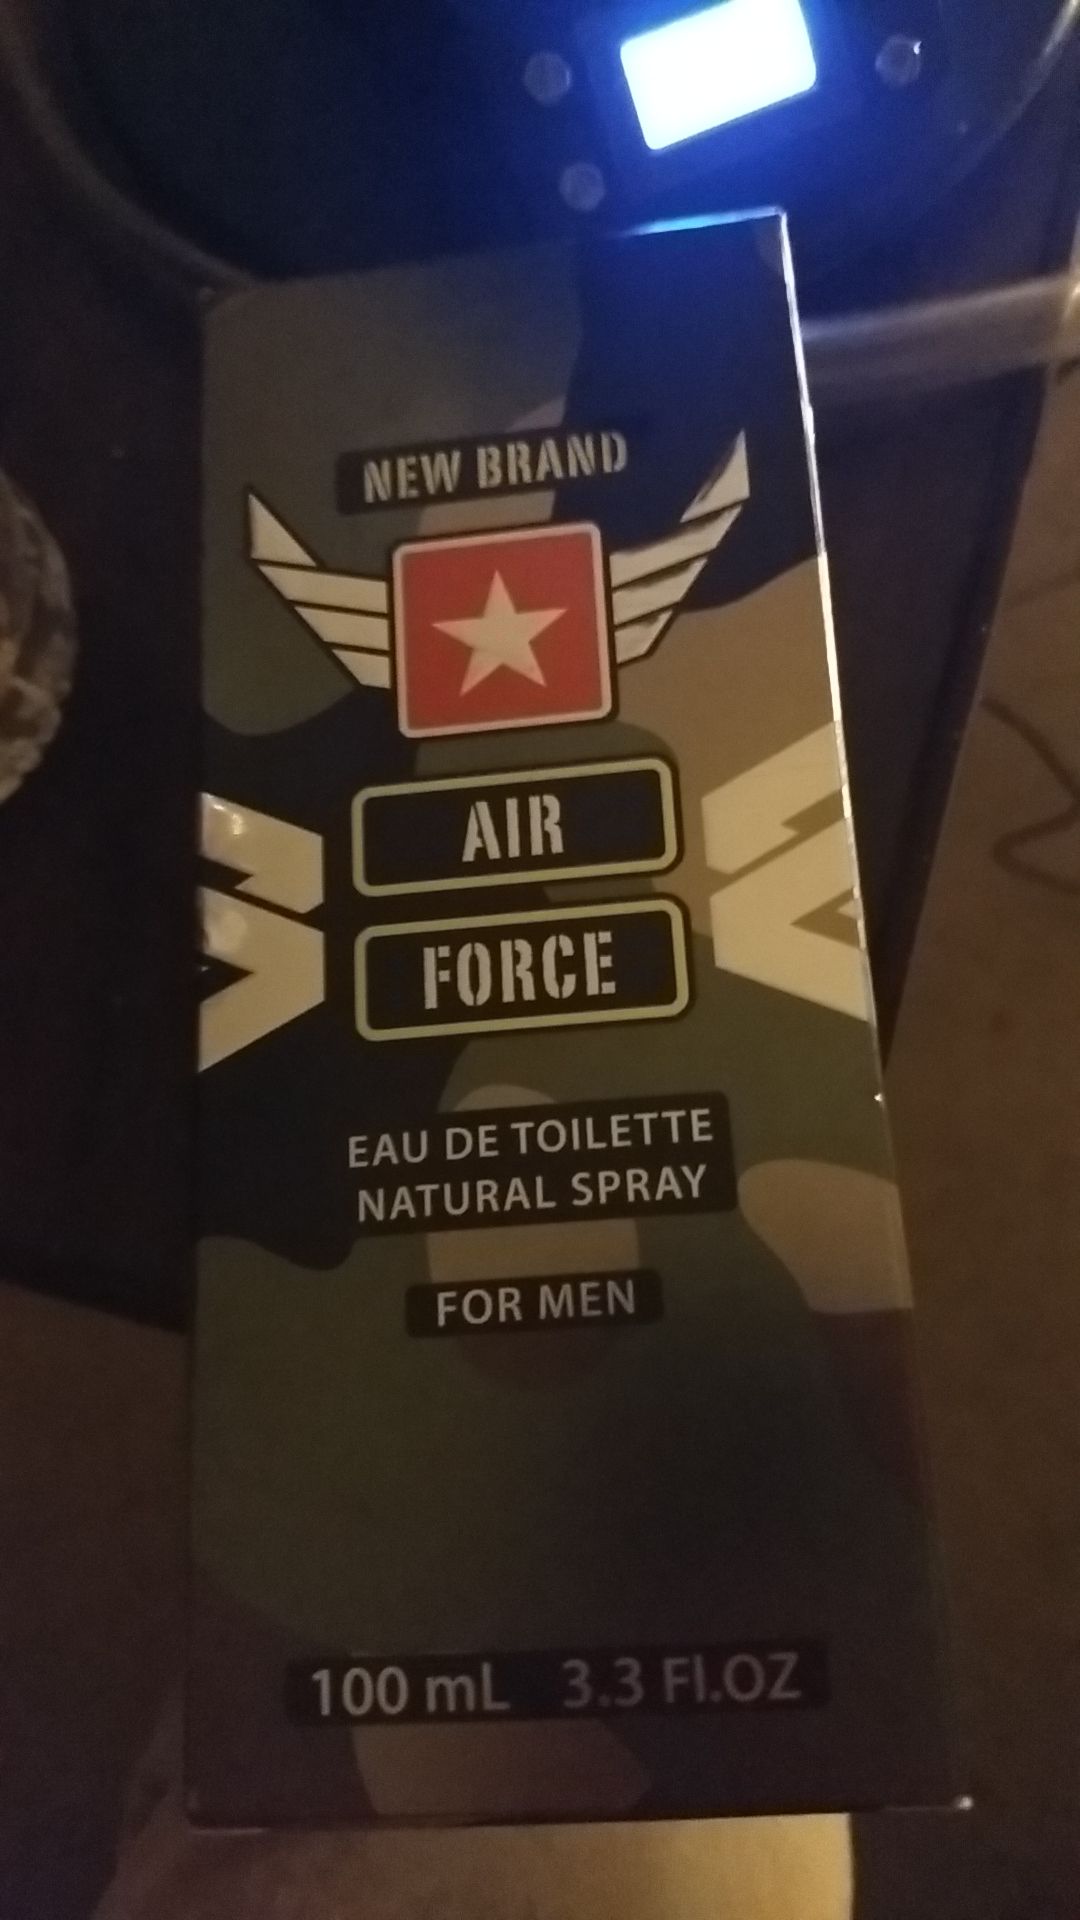 New Brand Air Force eau de toilette natural spray for men